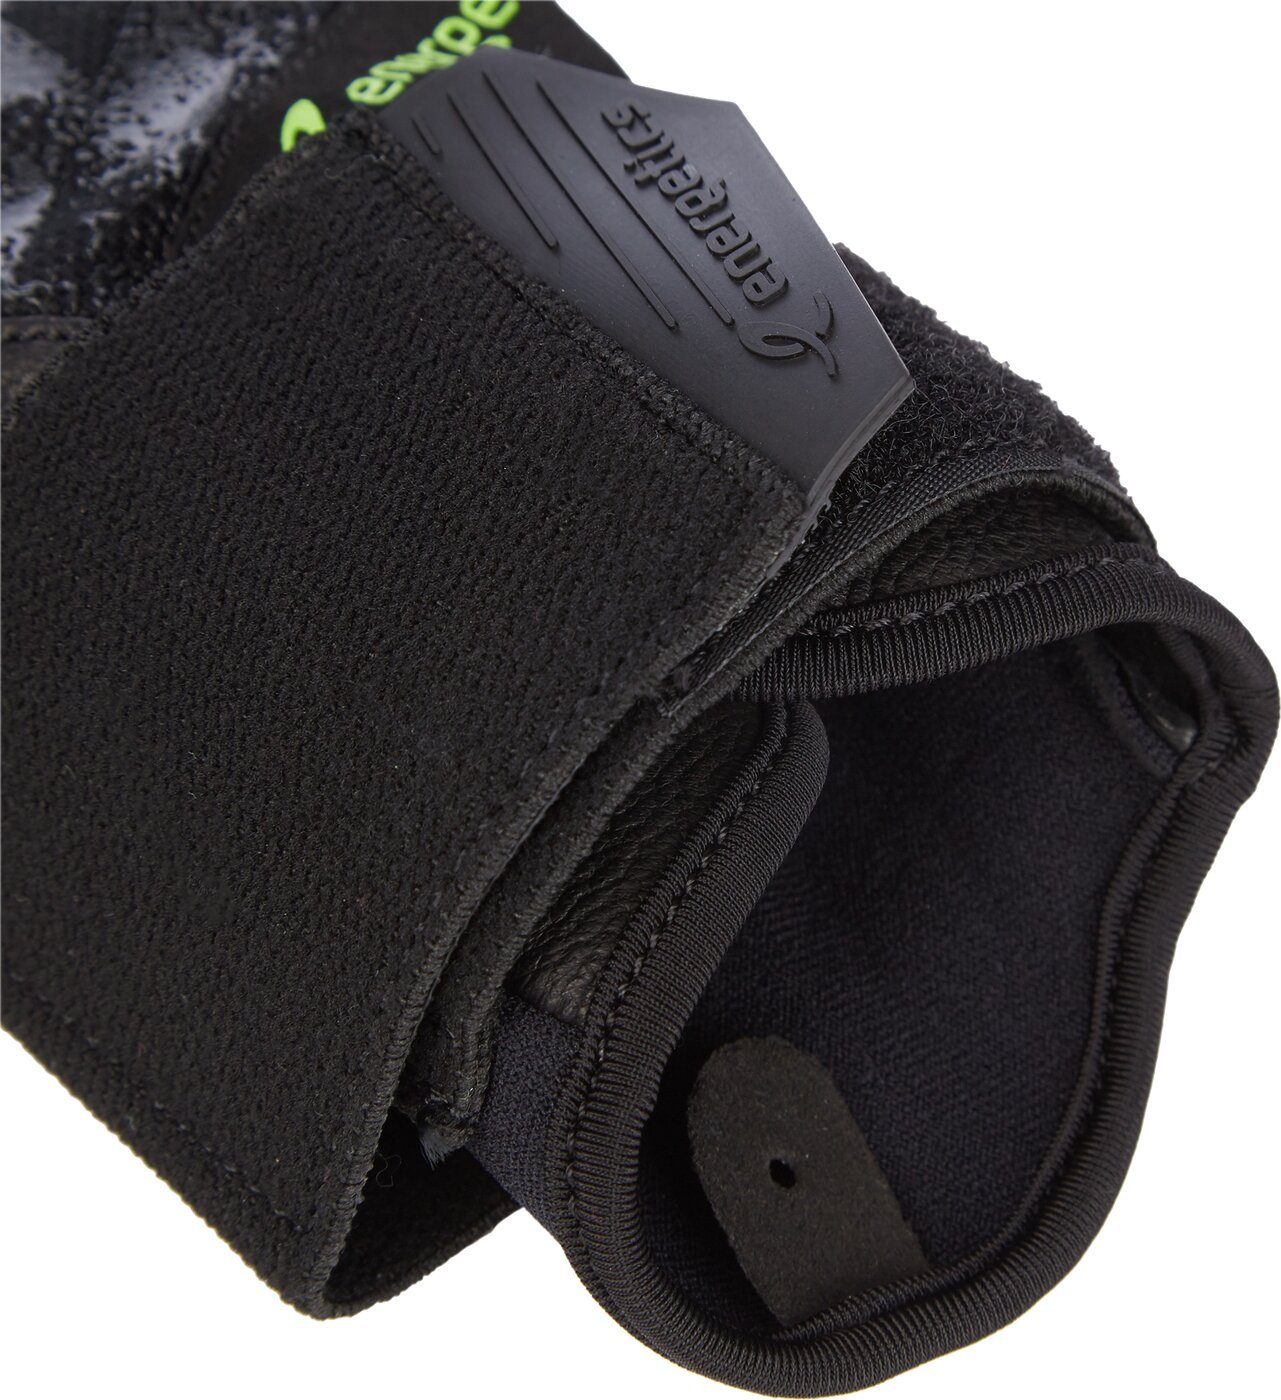 Trainingshandschuhe Handschuh BLACK/YELLOW MFG750 Energetics